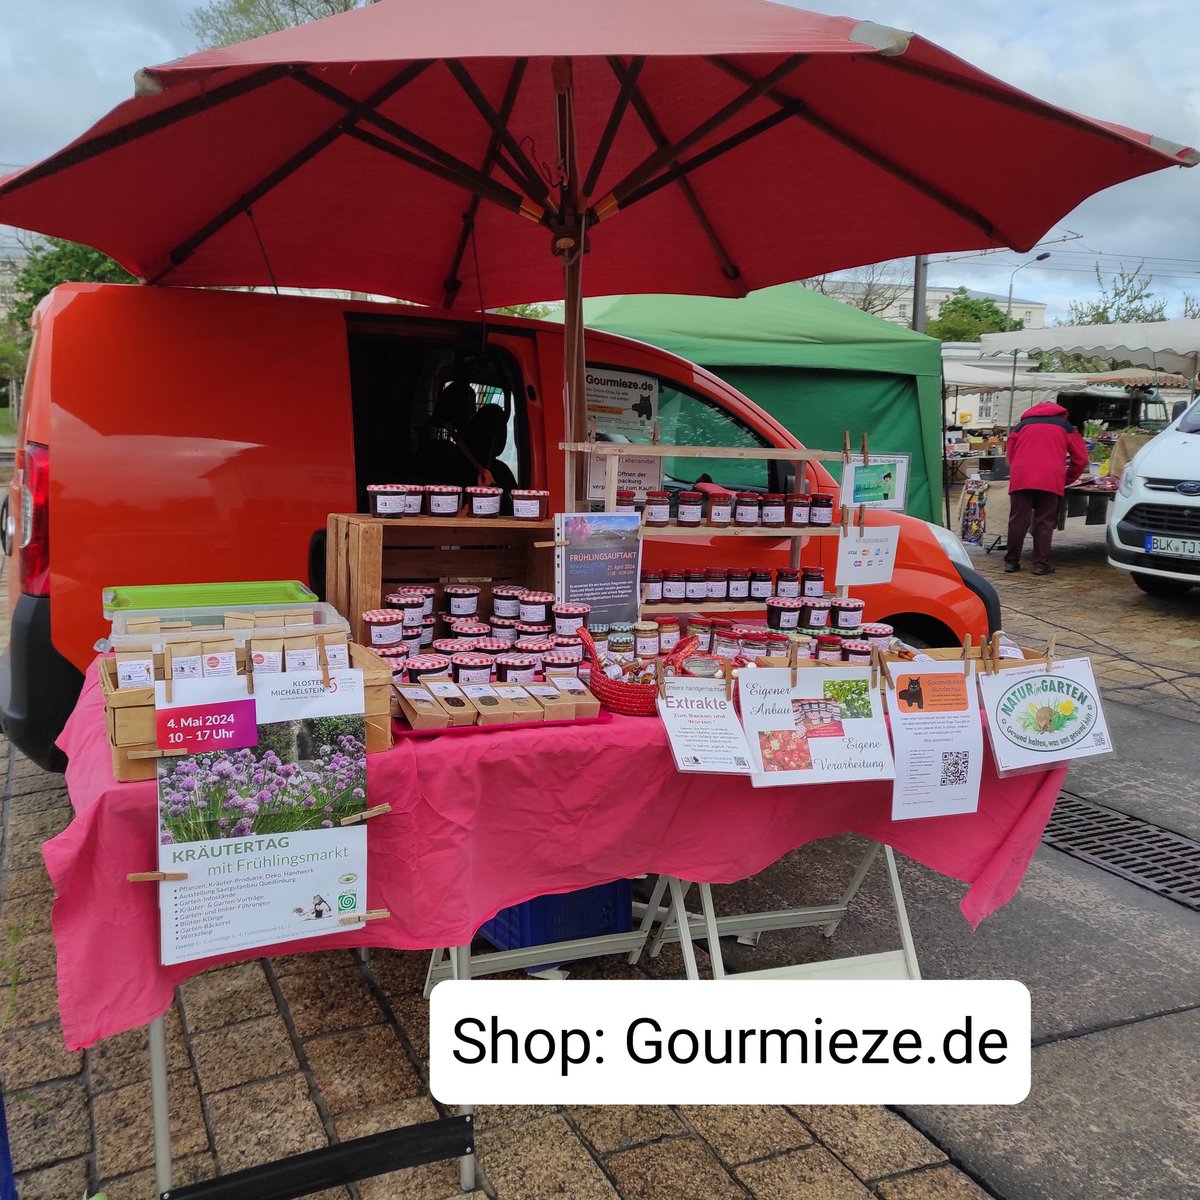 Heute in #leuna 
gourmieze.de
Eigenwerbung 

#gourmetkater #gourmieze #shopping #markt #food #marmelade #kräutersalz #senf #direktvermarkter #kräutergarten